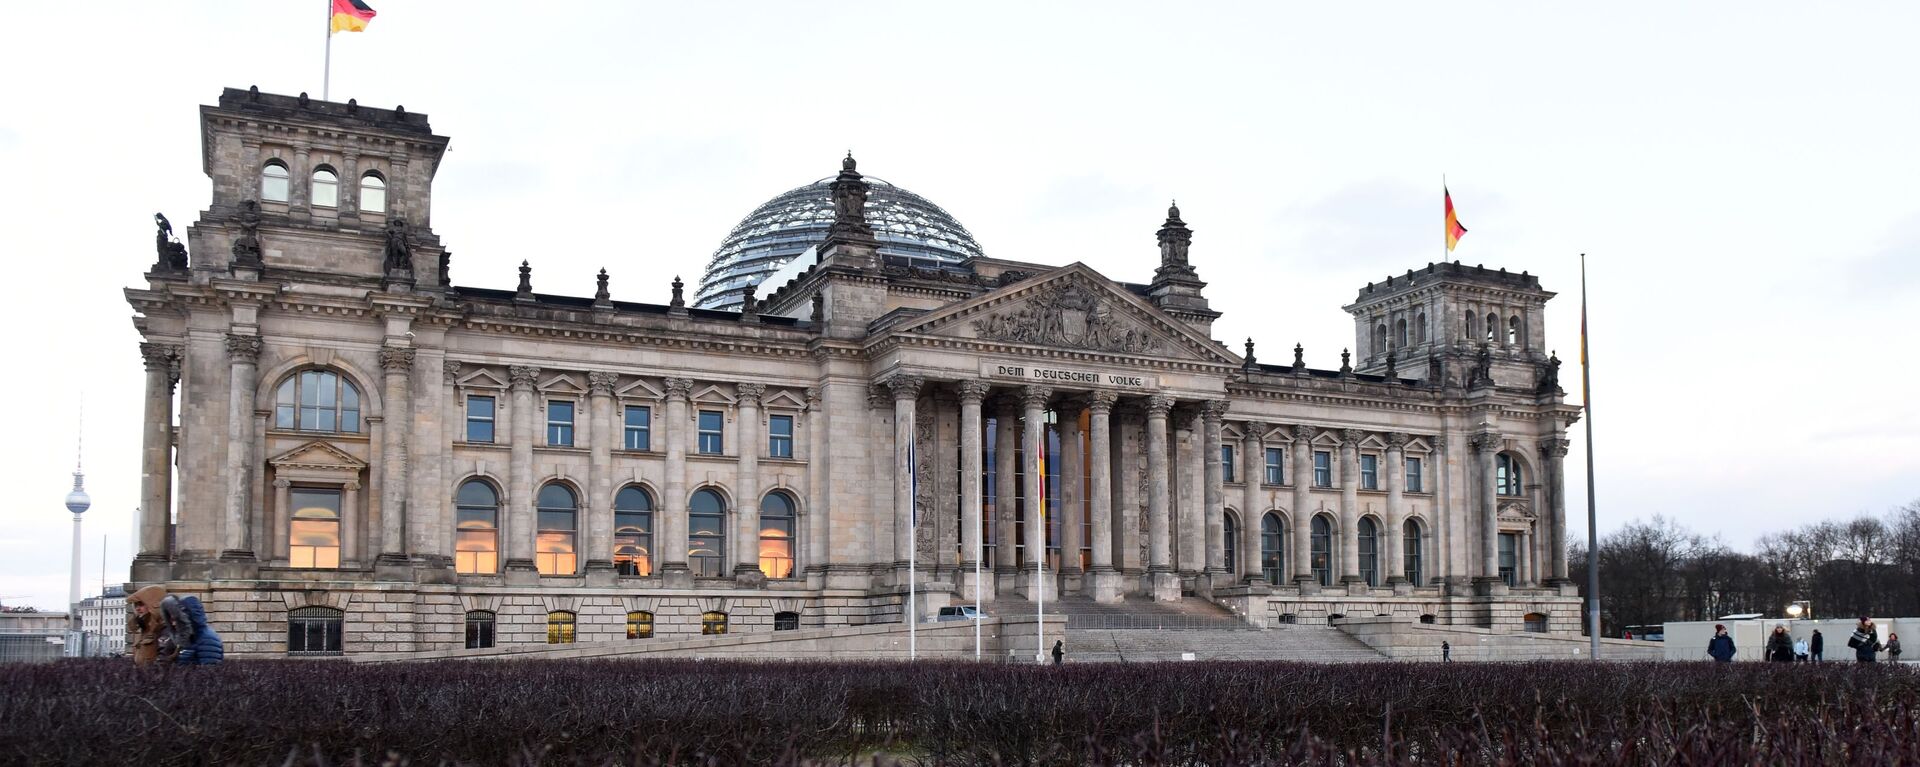 Tòa nhà Bundestag (Quốc hội) ở Berlin. - Sputnik Việt Nam, 1920, 24.12.2022